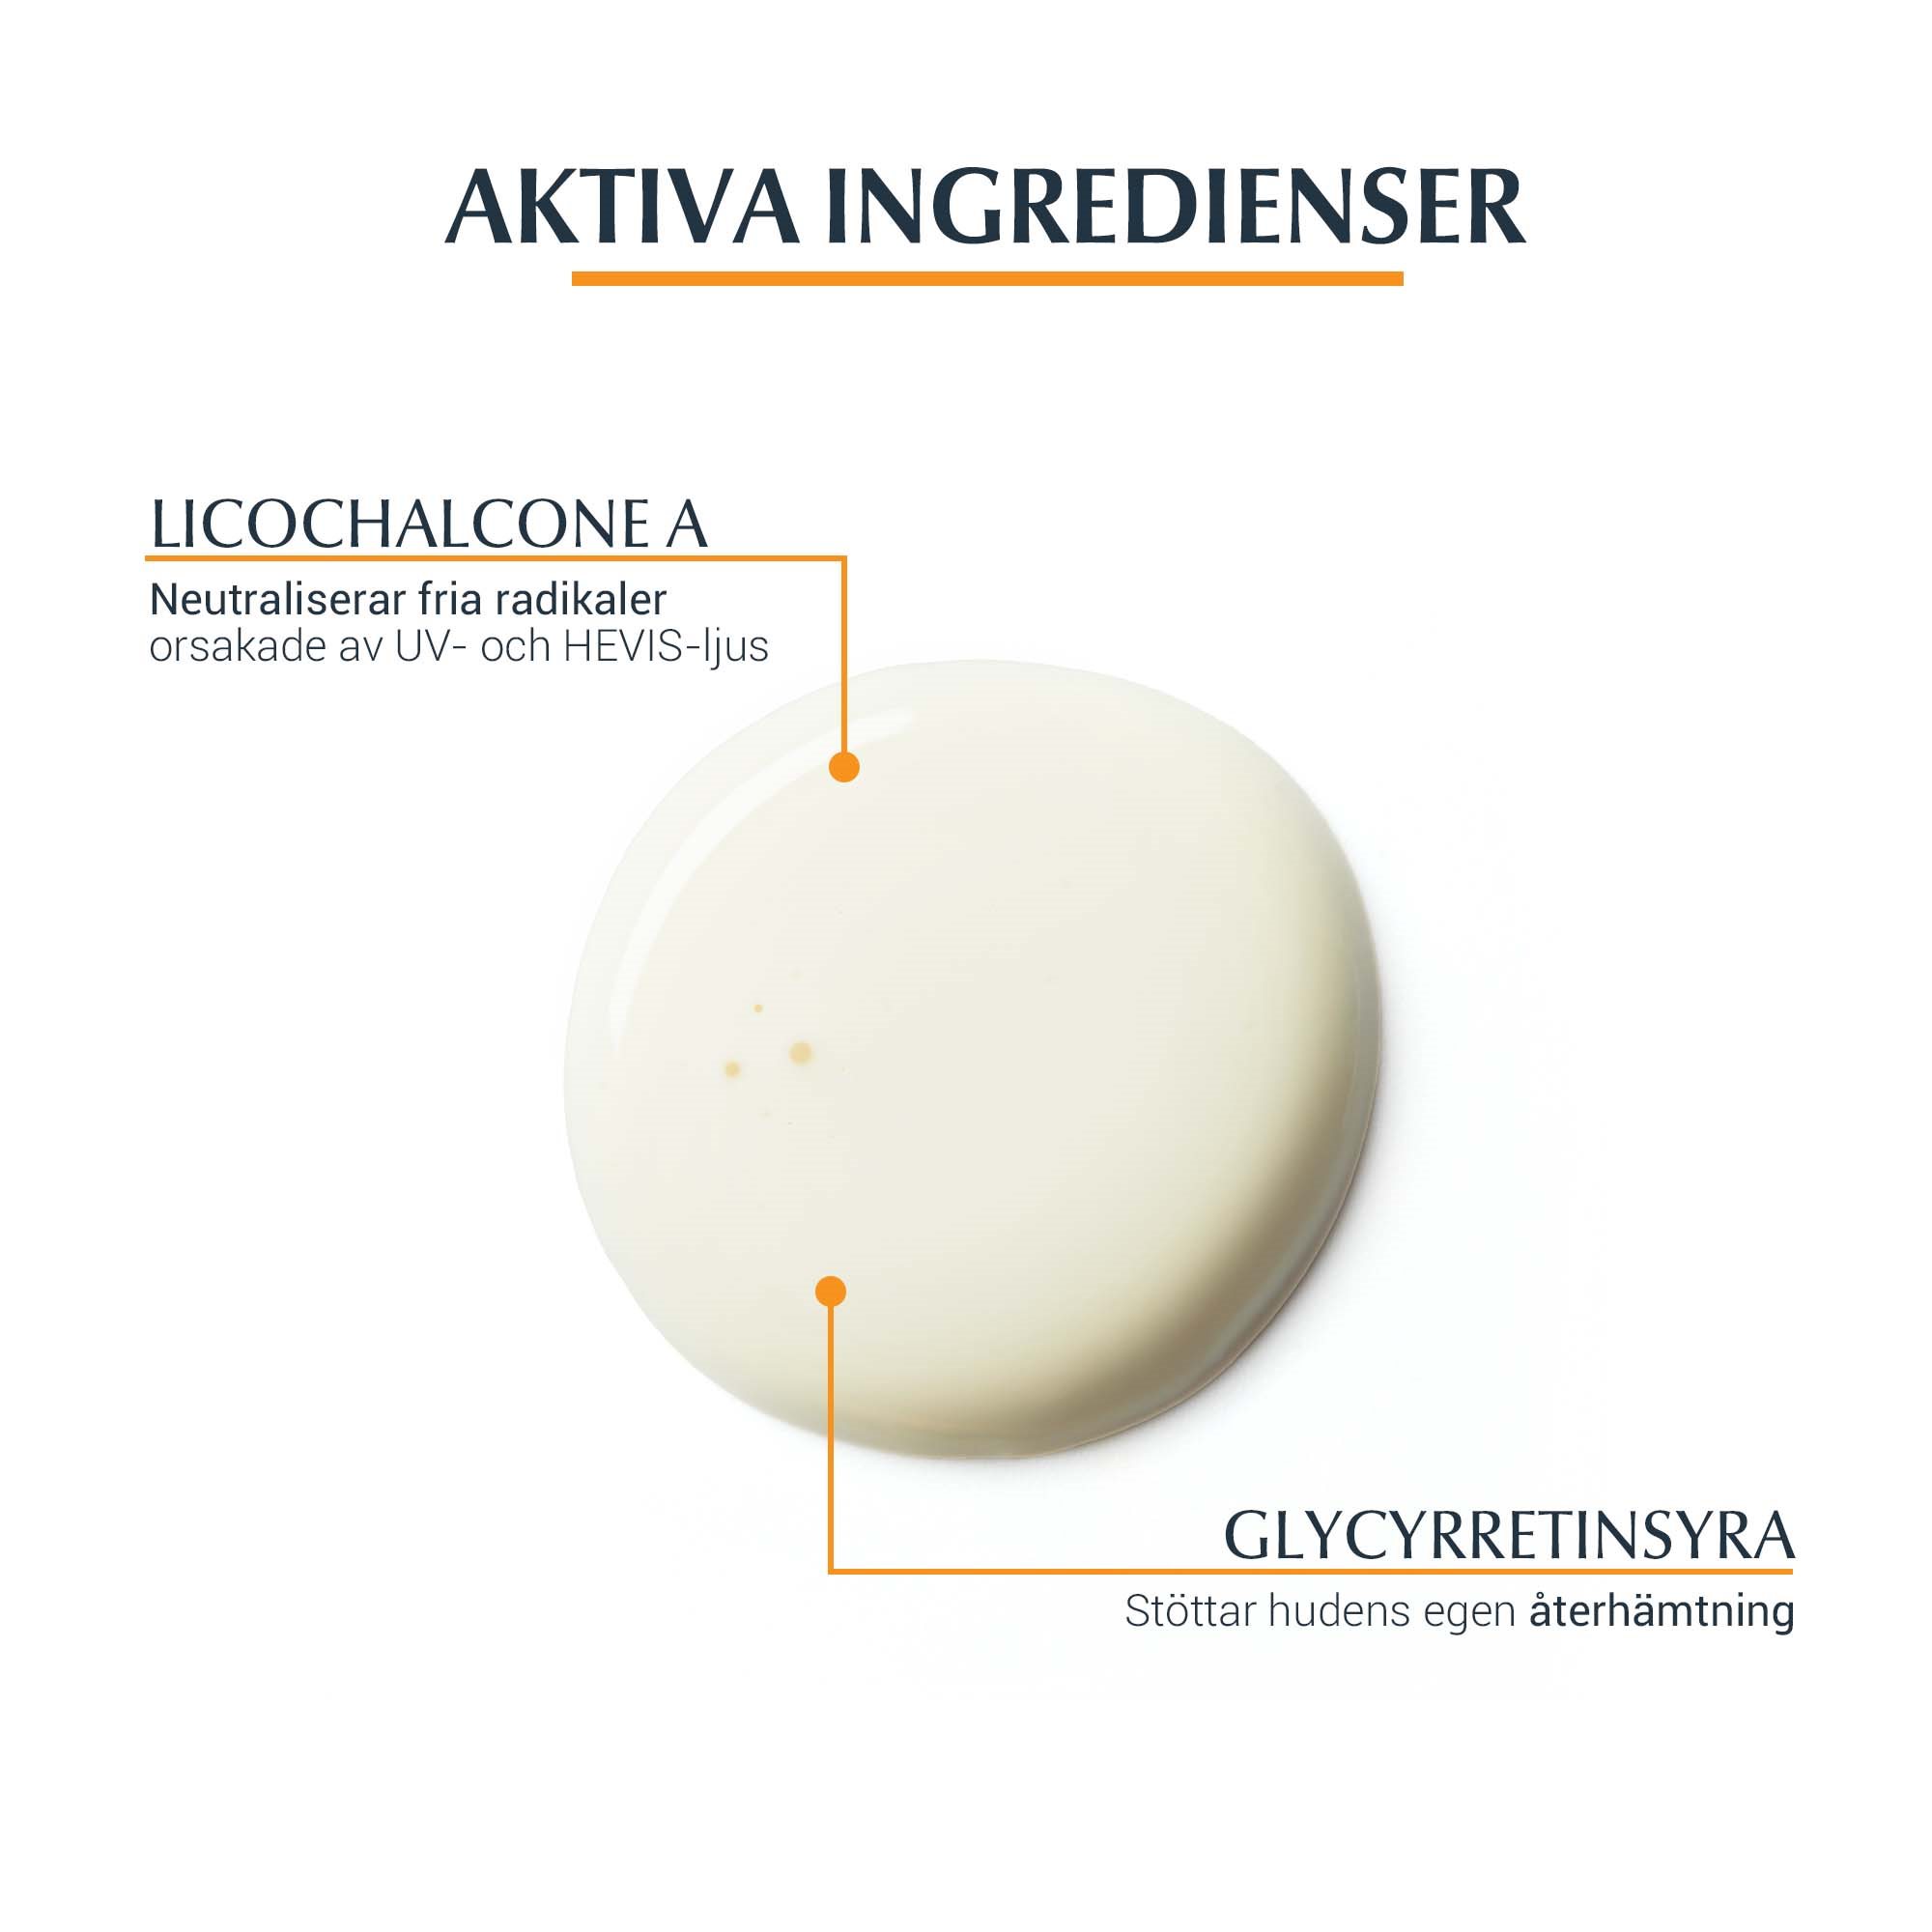 Bild med konsitens och aktiva ingredienser för Eucerin Kids Sun Fluid Pocket size SPF 50+, licochalcone A och glycyrretinsyra